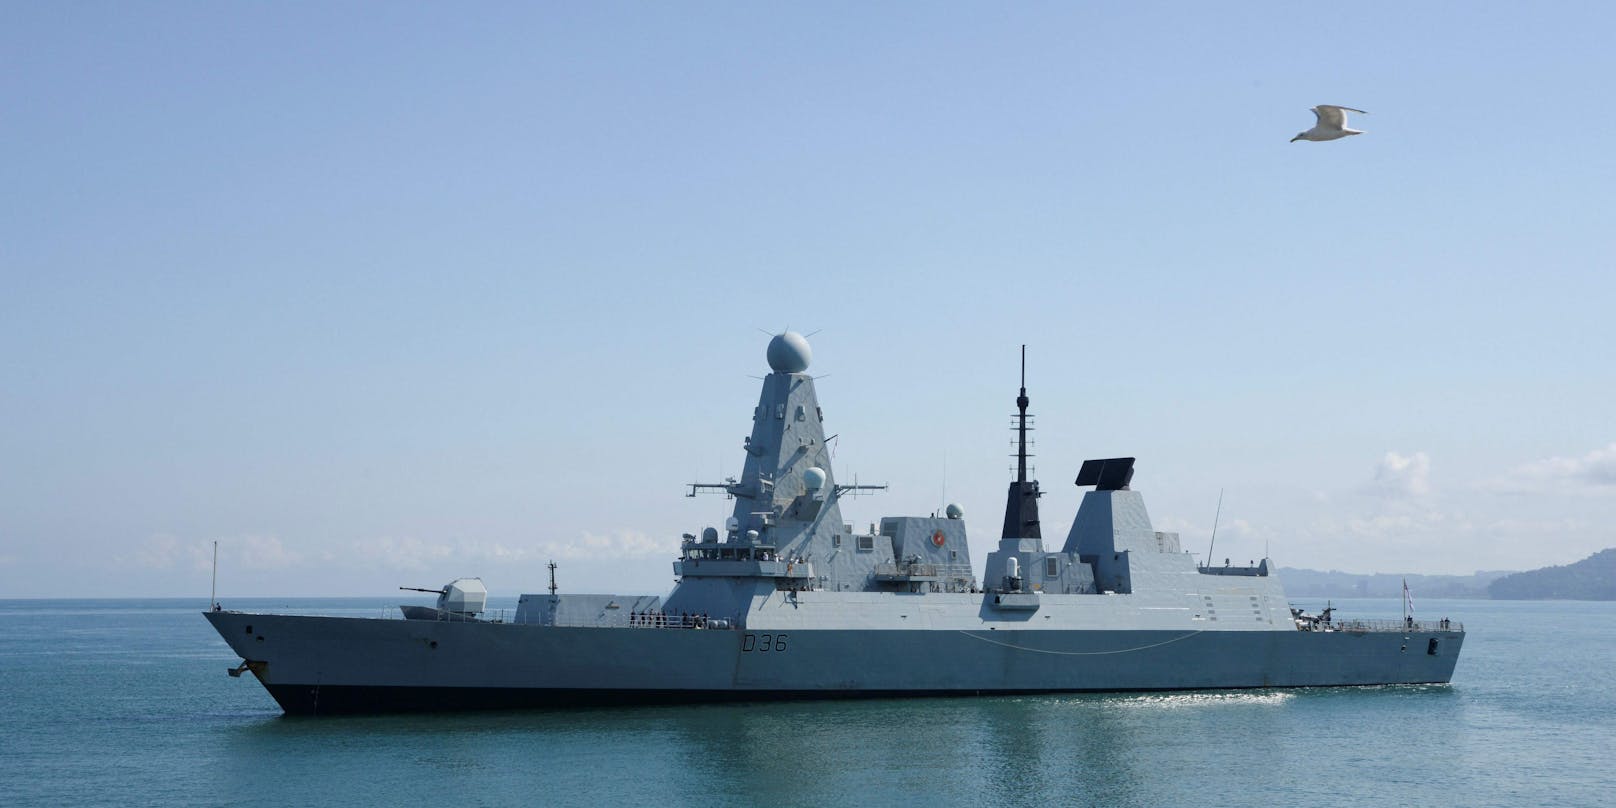 Ein anonymer Bürger fand an einer Bushaltestelle in England geheime Dokumente des britischen Verteidigungsministeriums. Darin geht es auch um den Streit zwischen Großbritannien und Russland wegen des Kriegsschiffs "HMS Defender" (im Bild).